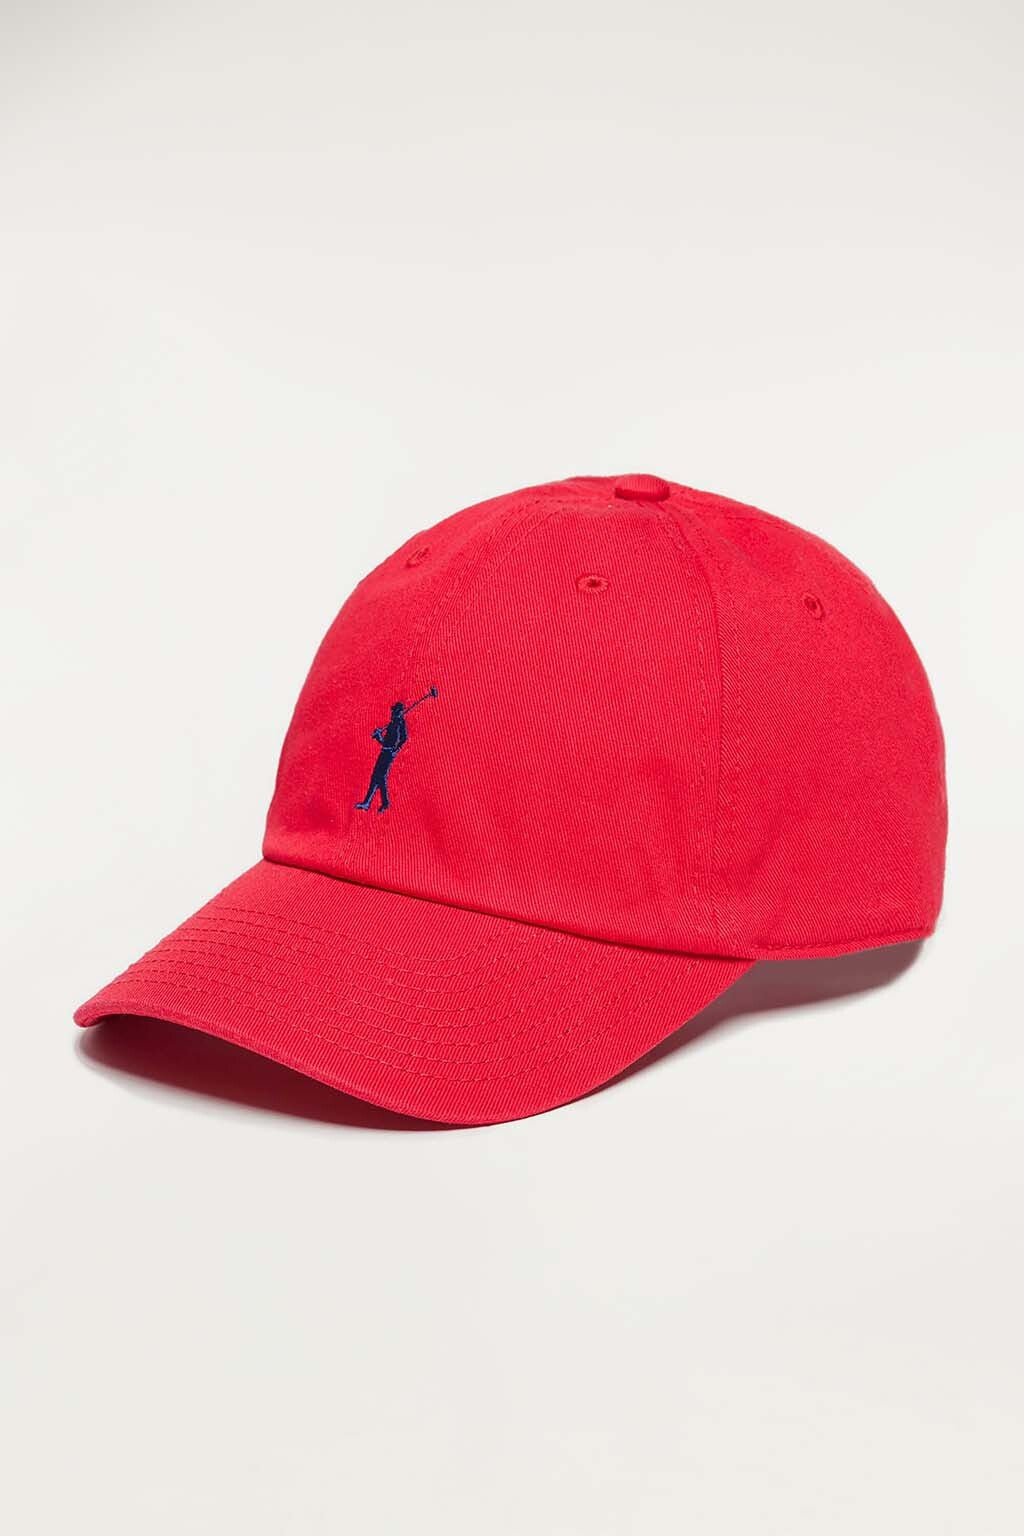 Gorra roja con a contraste – Polo Club